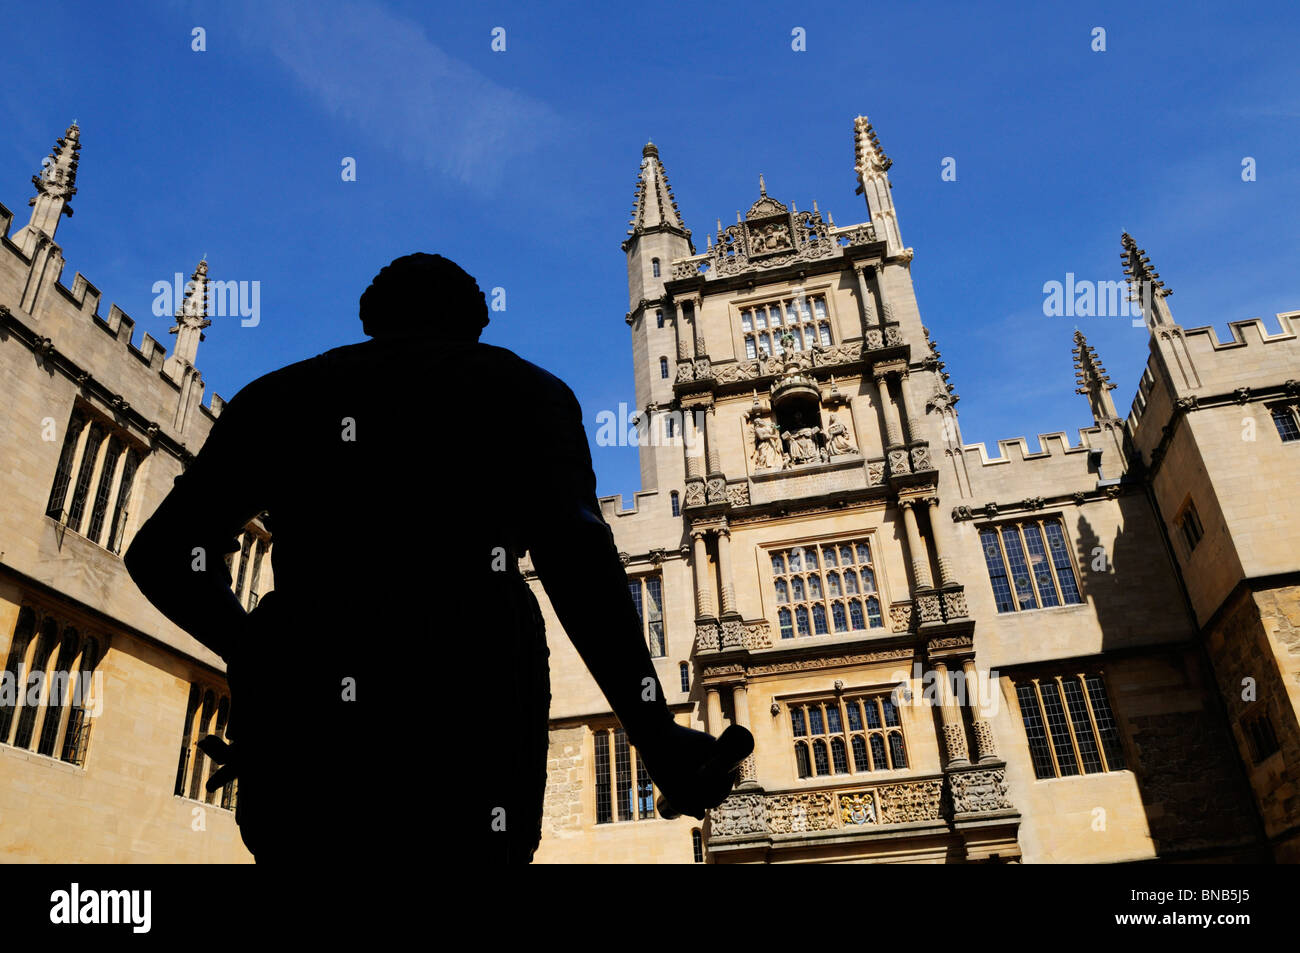 L'ancienne bibliothèque bodléienne, avec la silhouette du statue de la comte de Pembroke, Oxford, England, UK Banque D'Images